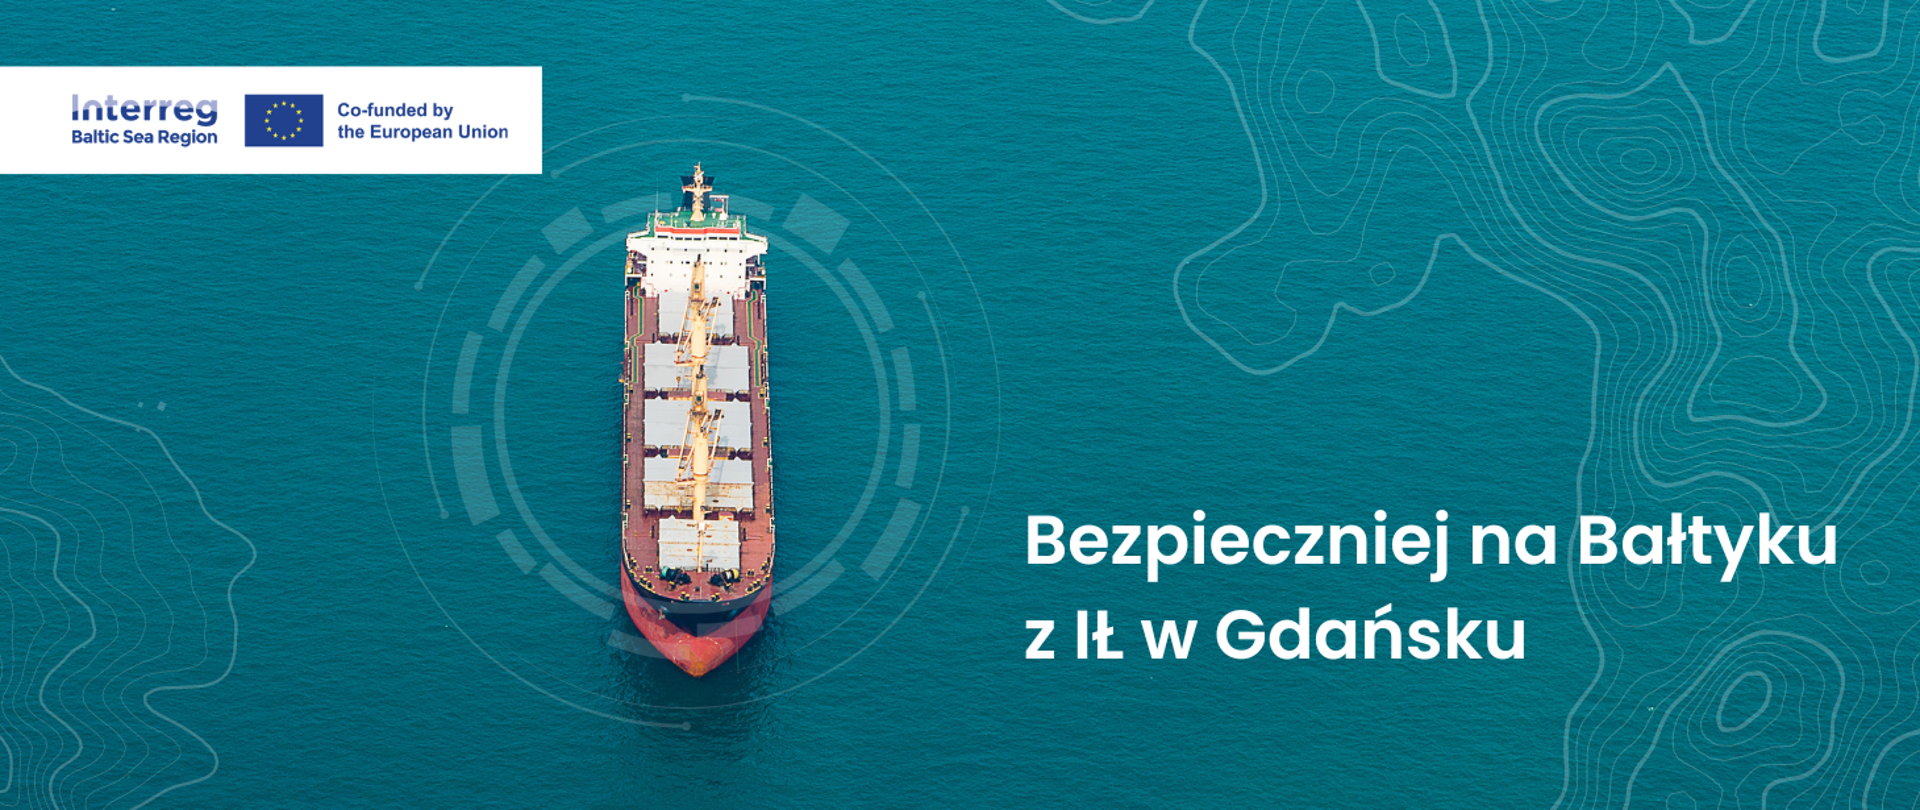 Zdjęcie statku towarowego na morzu i napis: Bezpieczniej na Bałtyku z IŁ w Gdańsku